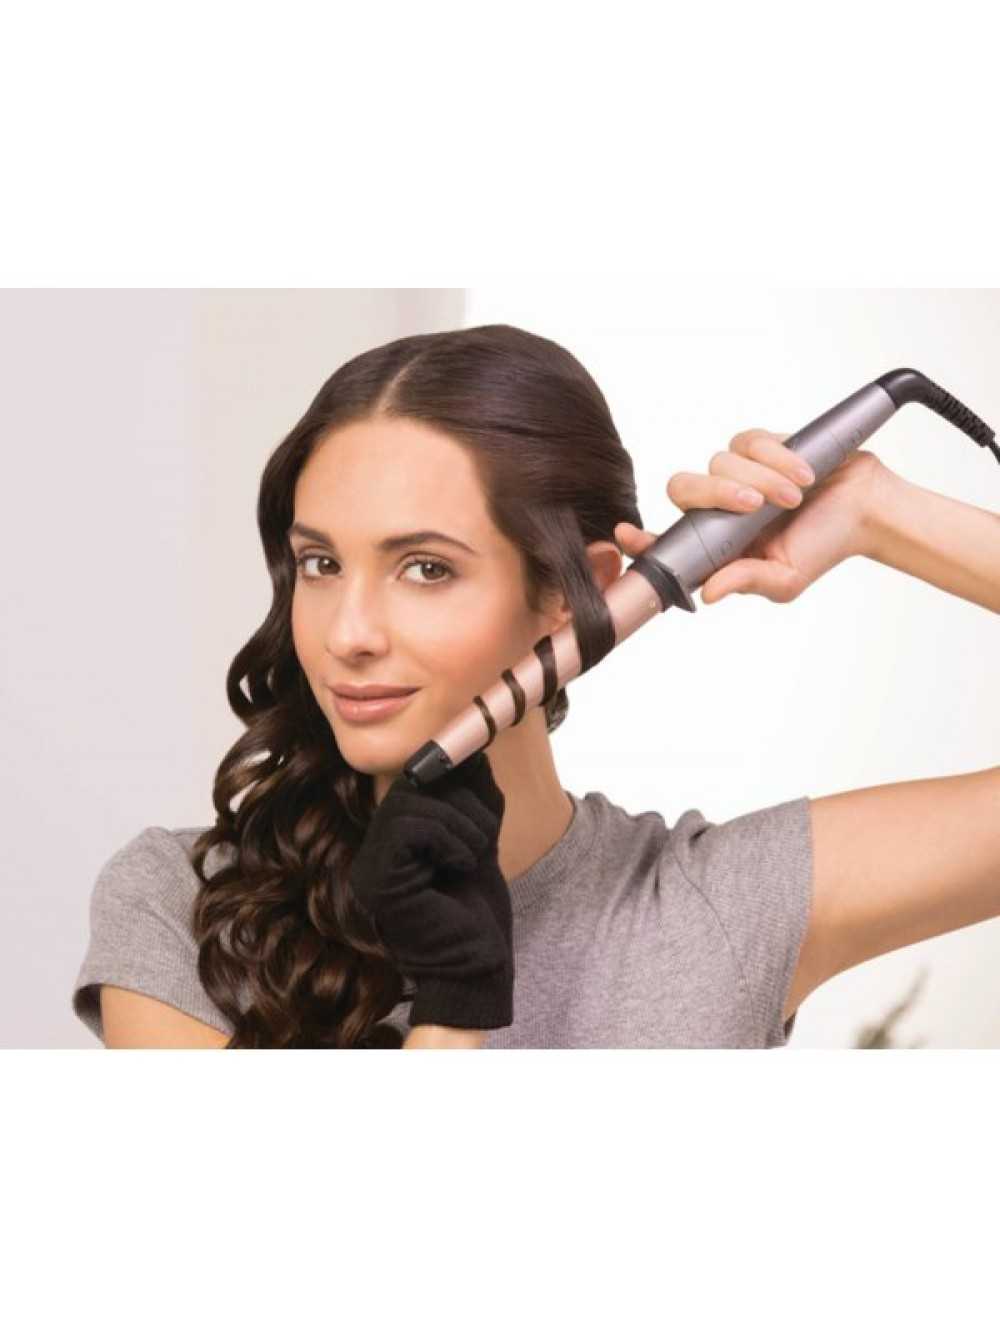 Плойка для волос тройная: инструкция по созданию красивых локонов, советы, фото